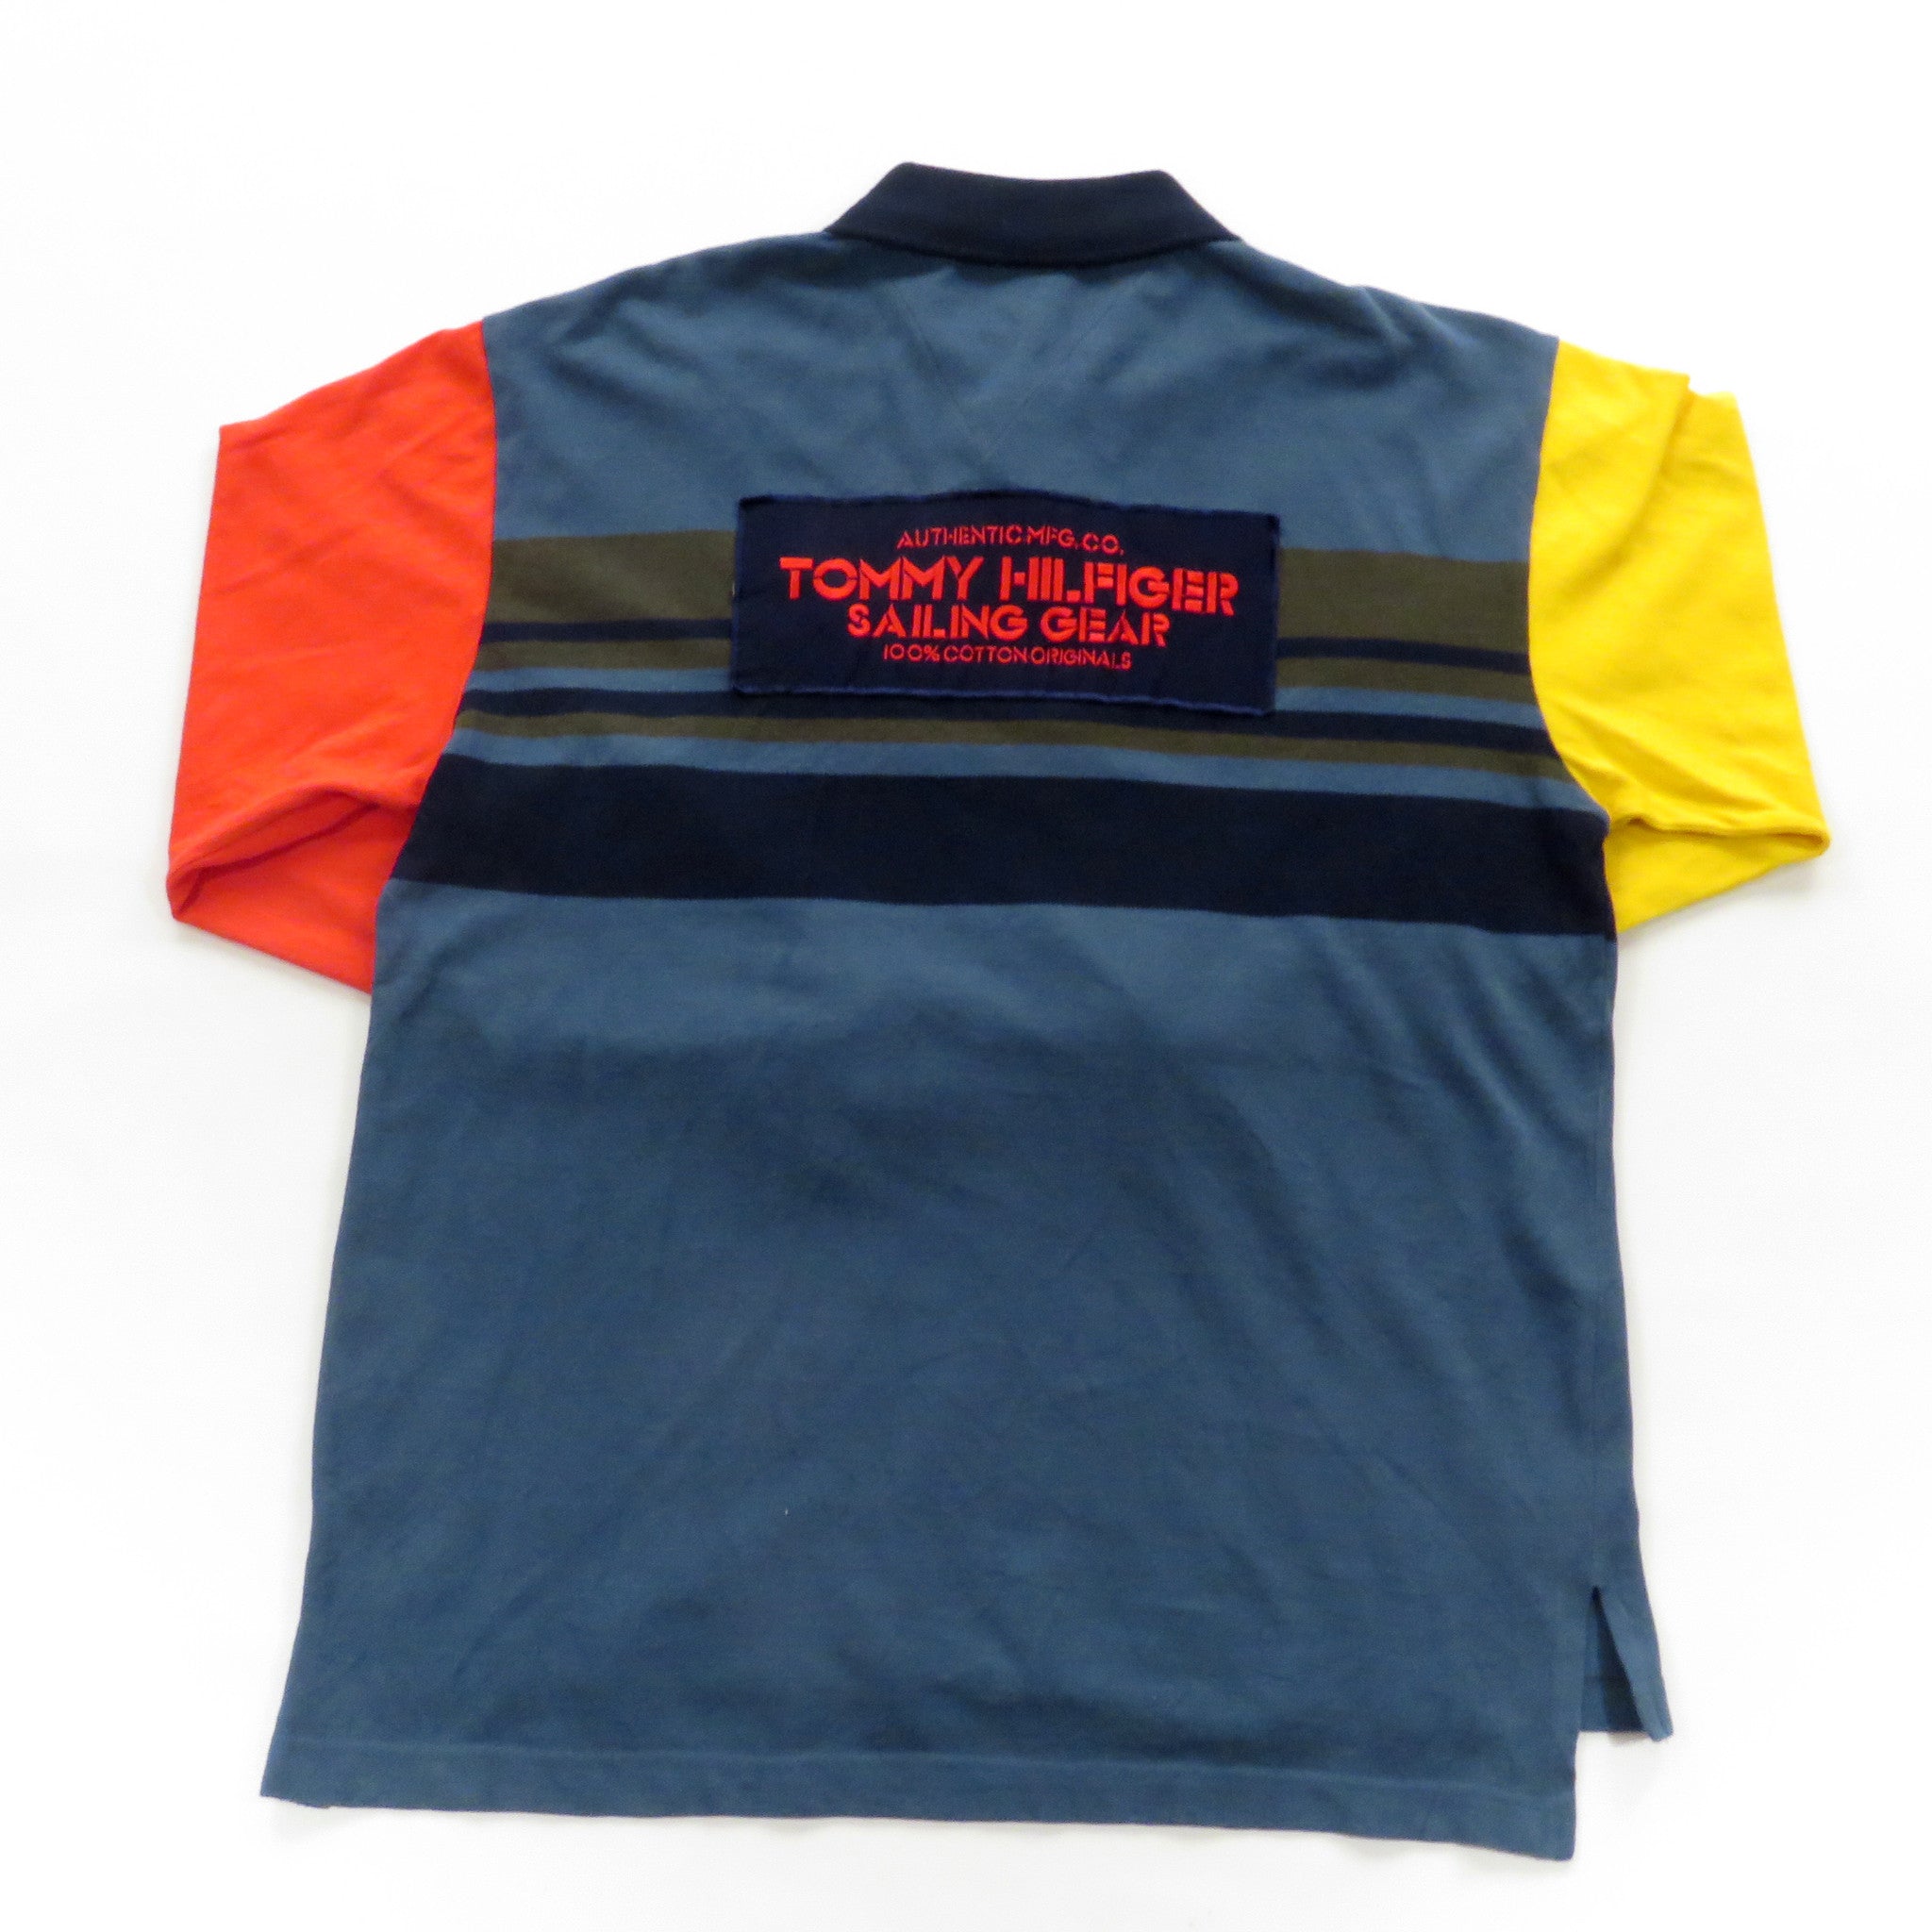 Tommy Hilfiger Sailing Gear Rugby Shirt Sz L